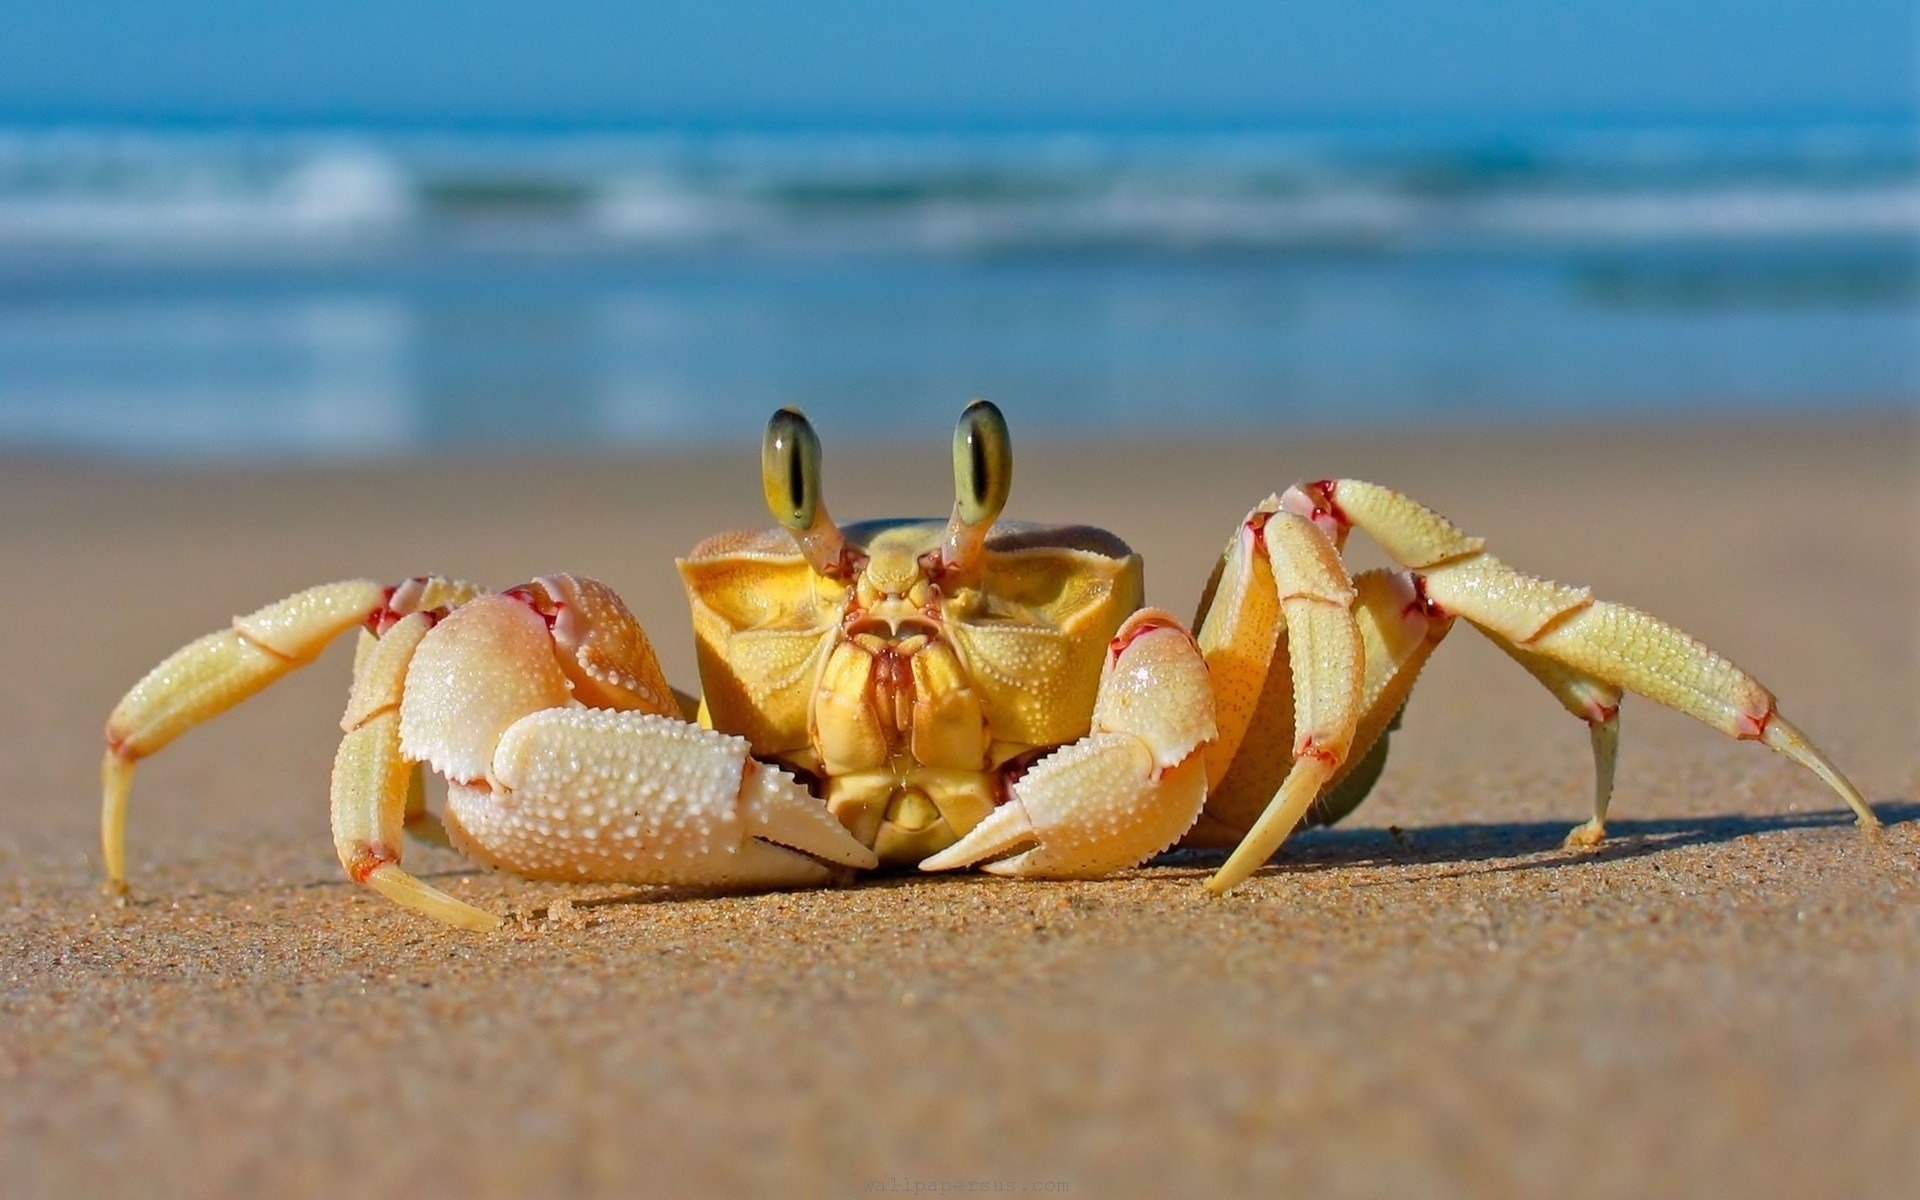 A cute little crab on the beach